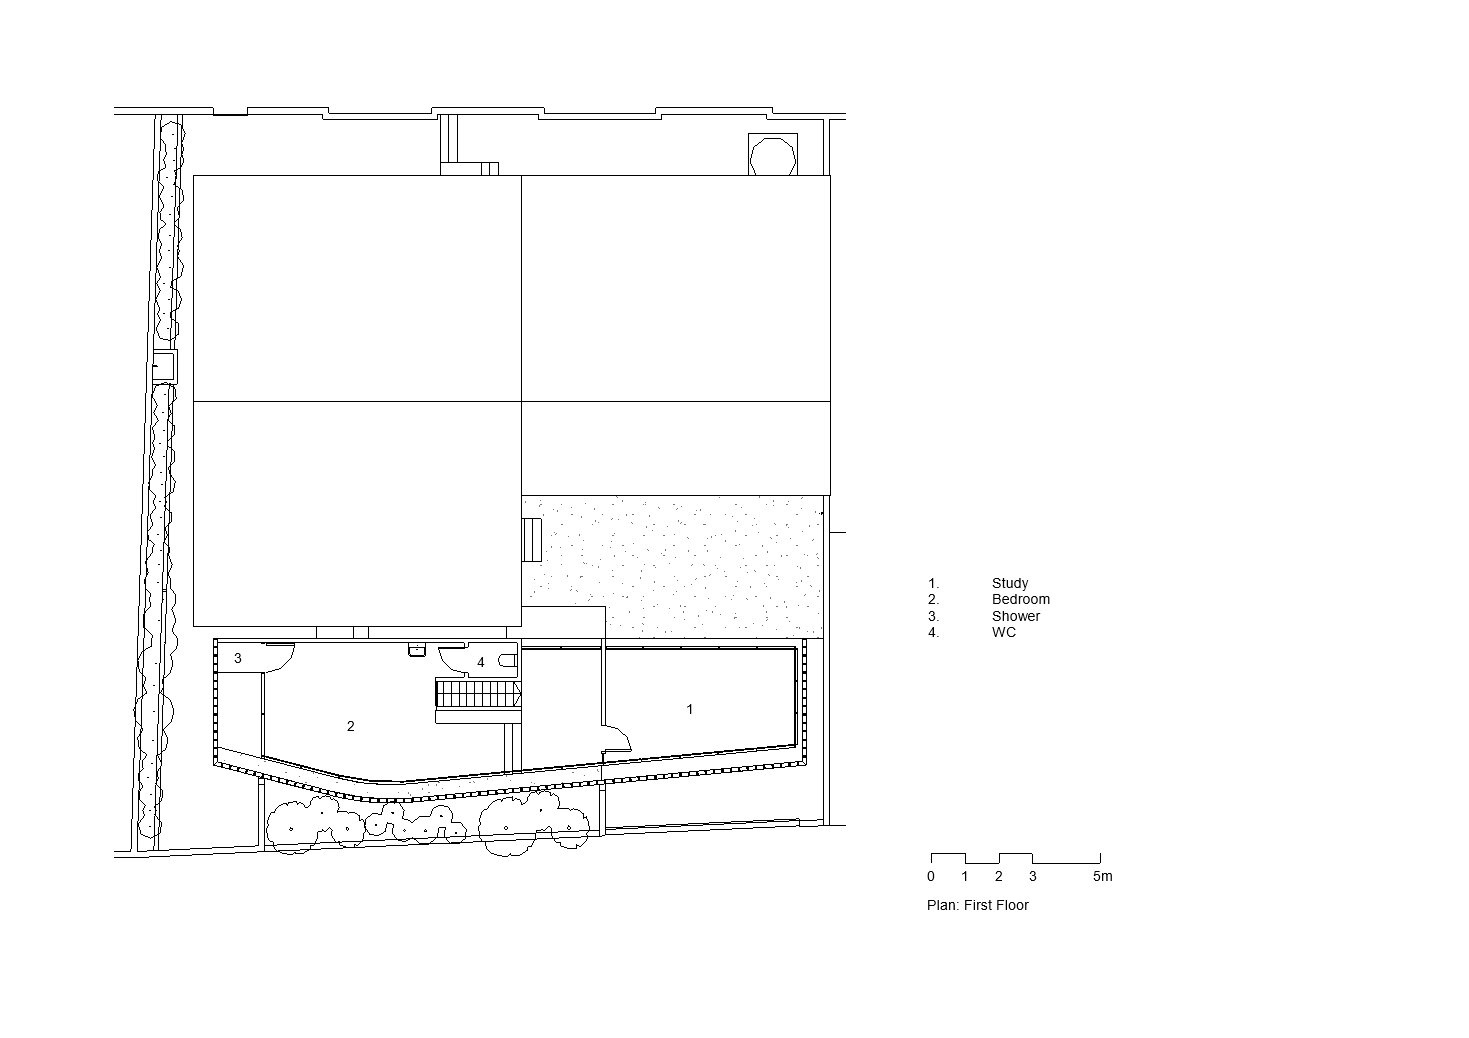 2020-07-15 - P - Sheet - A-CD-103 - First Floor Plan - New_cropped.jpg